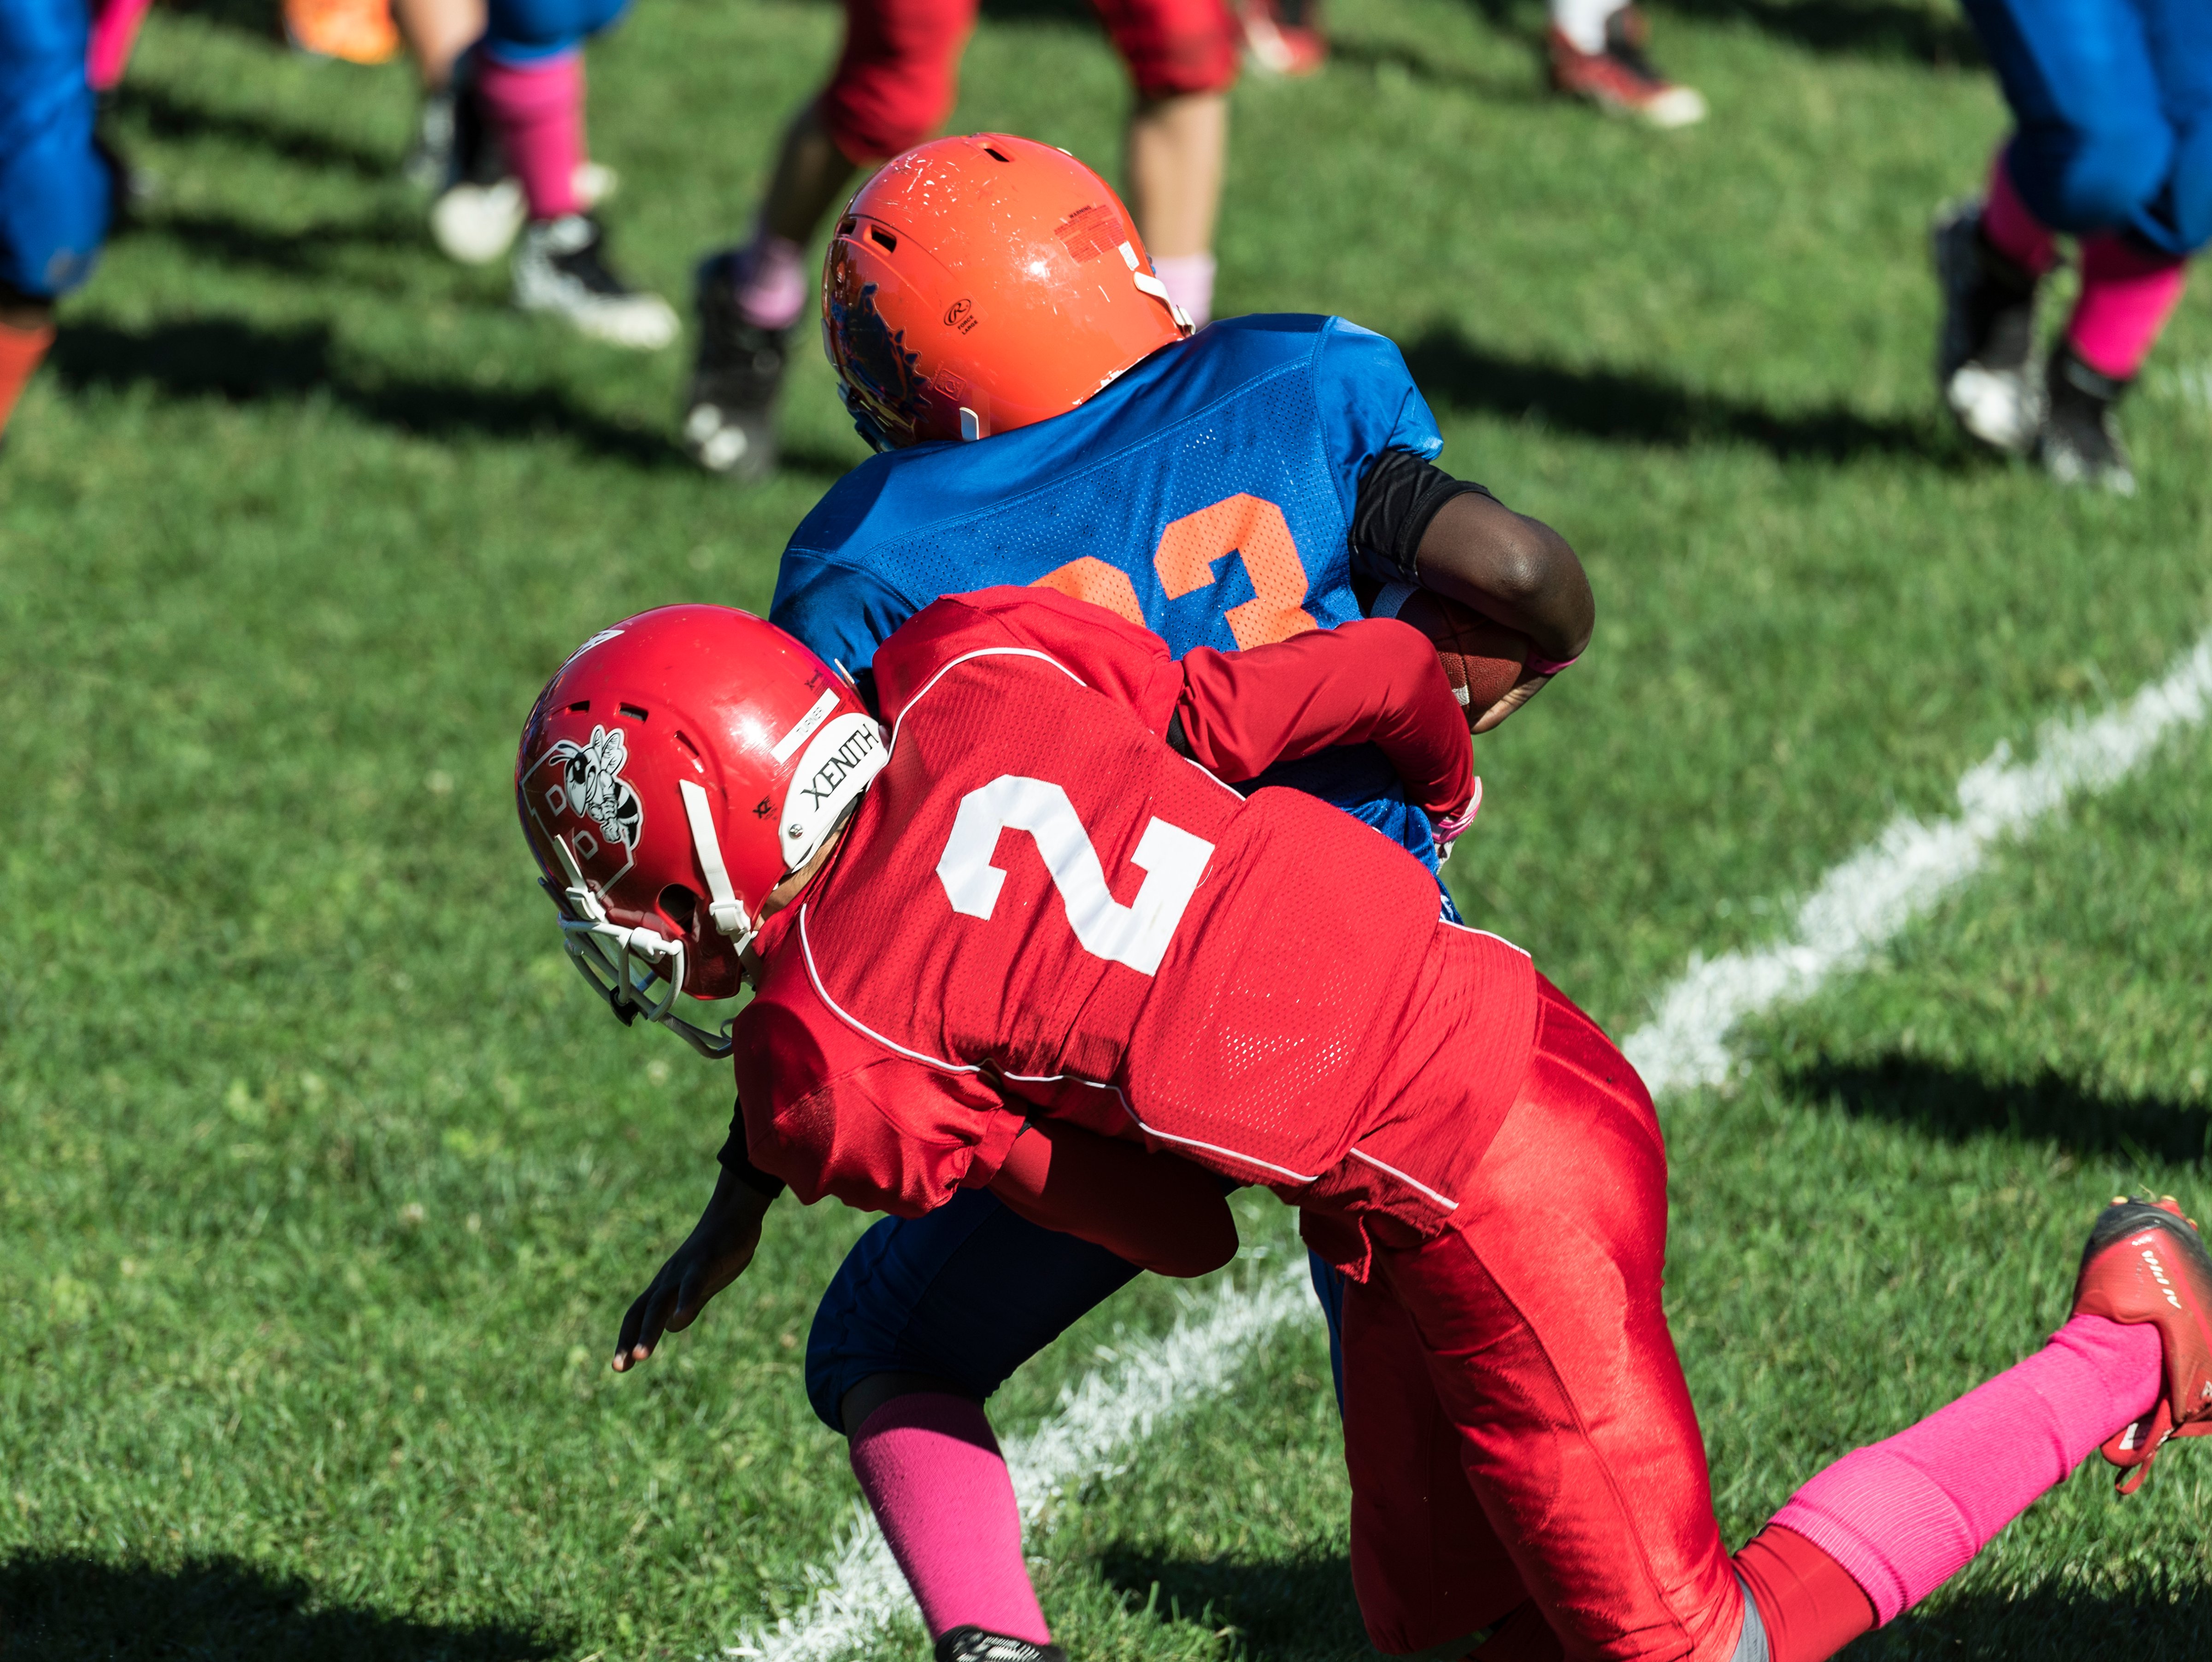 Making a tackle during a Pop Warner football game. (John Greim&mdash;LightRocket via Getty Images)